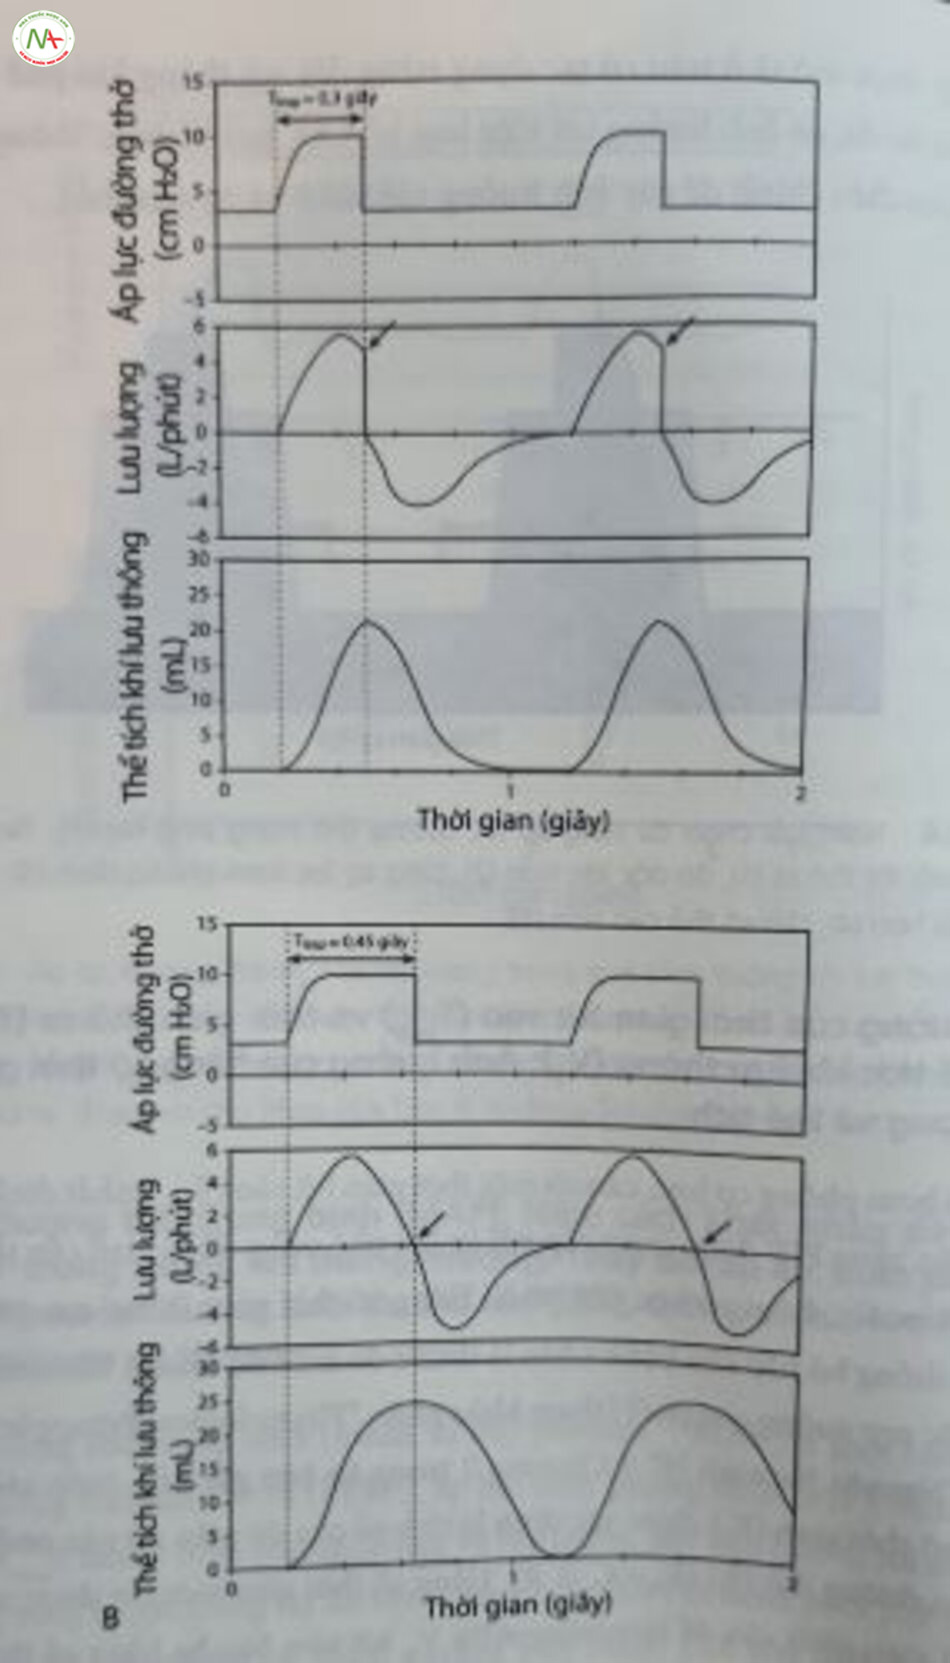 Hình 12.7 Ảnh hưởng của thời gian hít vào lên thể tích khí lưu thông được cung cấp trong bơm phòng cơ học giới hạn áp lực. Trẻ sơ sinh đủ tháng với cơ học phổi bình thường. (A) Thời gian hít vào (T...) là 0,3 giây. Lưu lượng hít vào đột ngột trở về 0 (mũi tên) mà không cho phép bơm phòng hoàn thành (thể tích khí lưu thông [V,) - 21 mL). (B) T insp = 0,45 giây. Lưu lượng hít vào được phép giảm đến 0 (mũi tên), dân đến V, lớn = hơn khi sử dụng cùng một áp lực bơm phồng đình (V, ~ 24 ml).